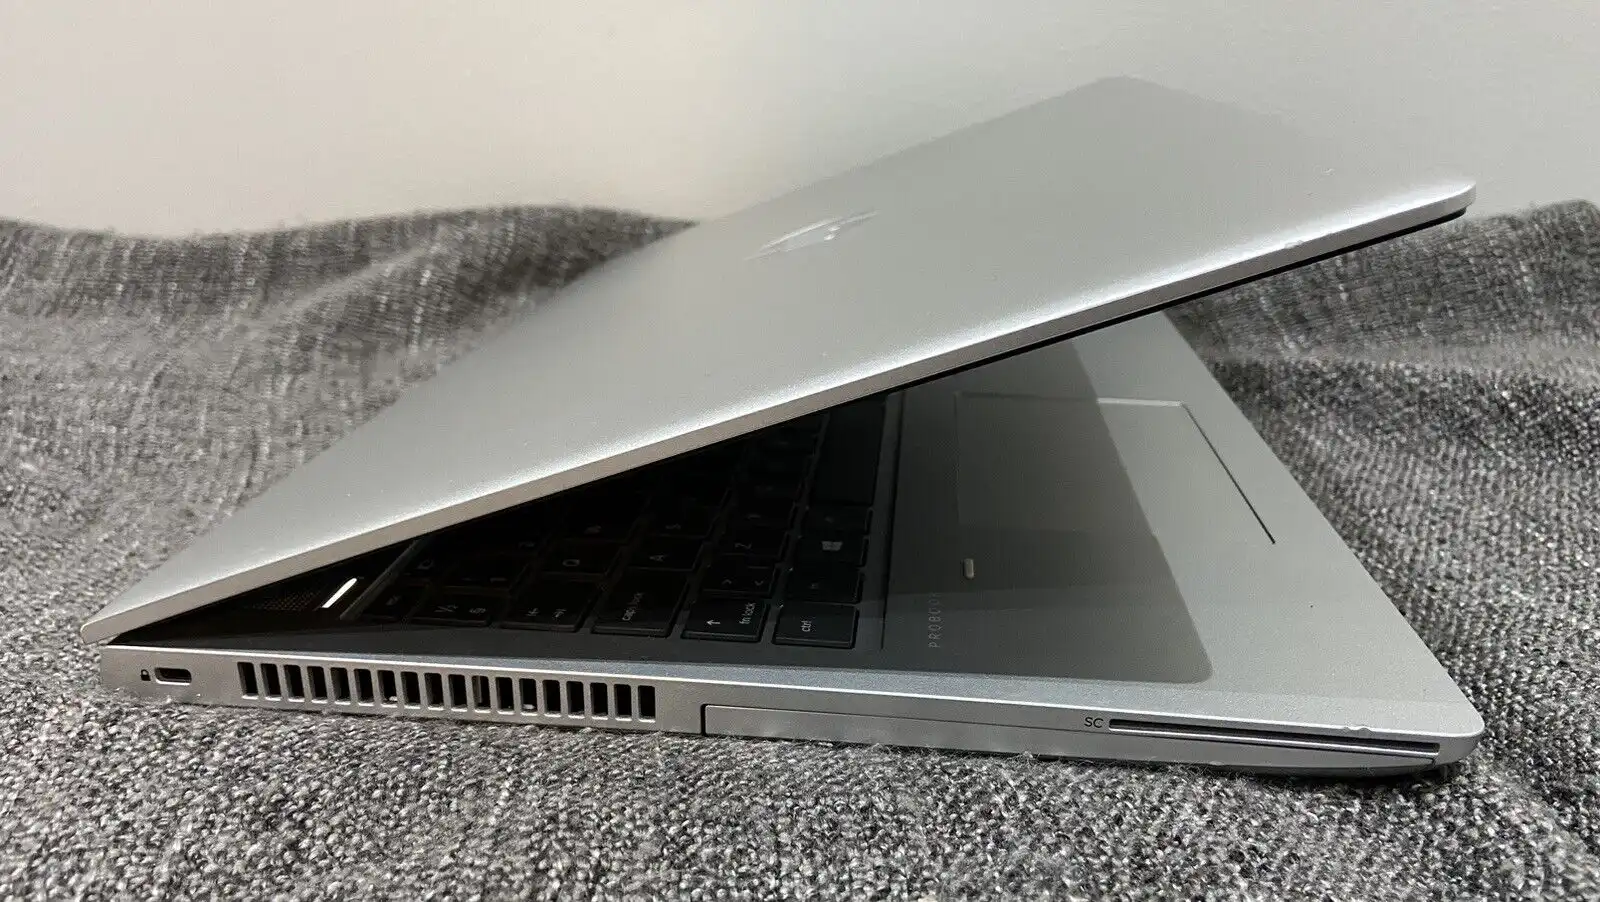 HP-ProBook-650-G4 